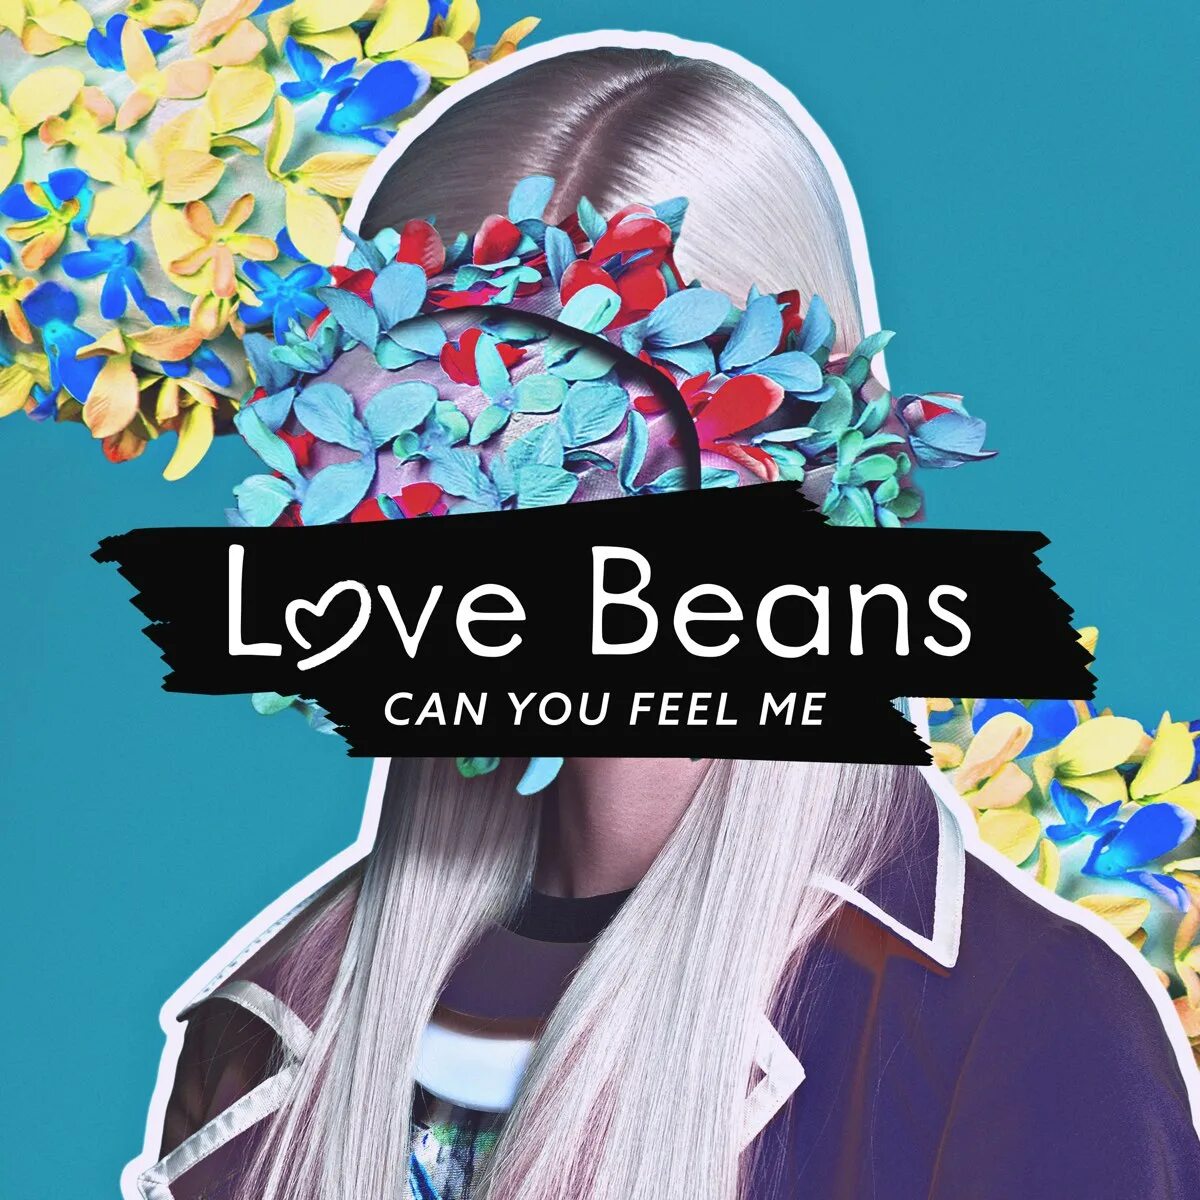 Love Beans. I can feel you. I feel Love песня. Love Beans исполнитель фото. I can feel love